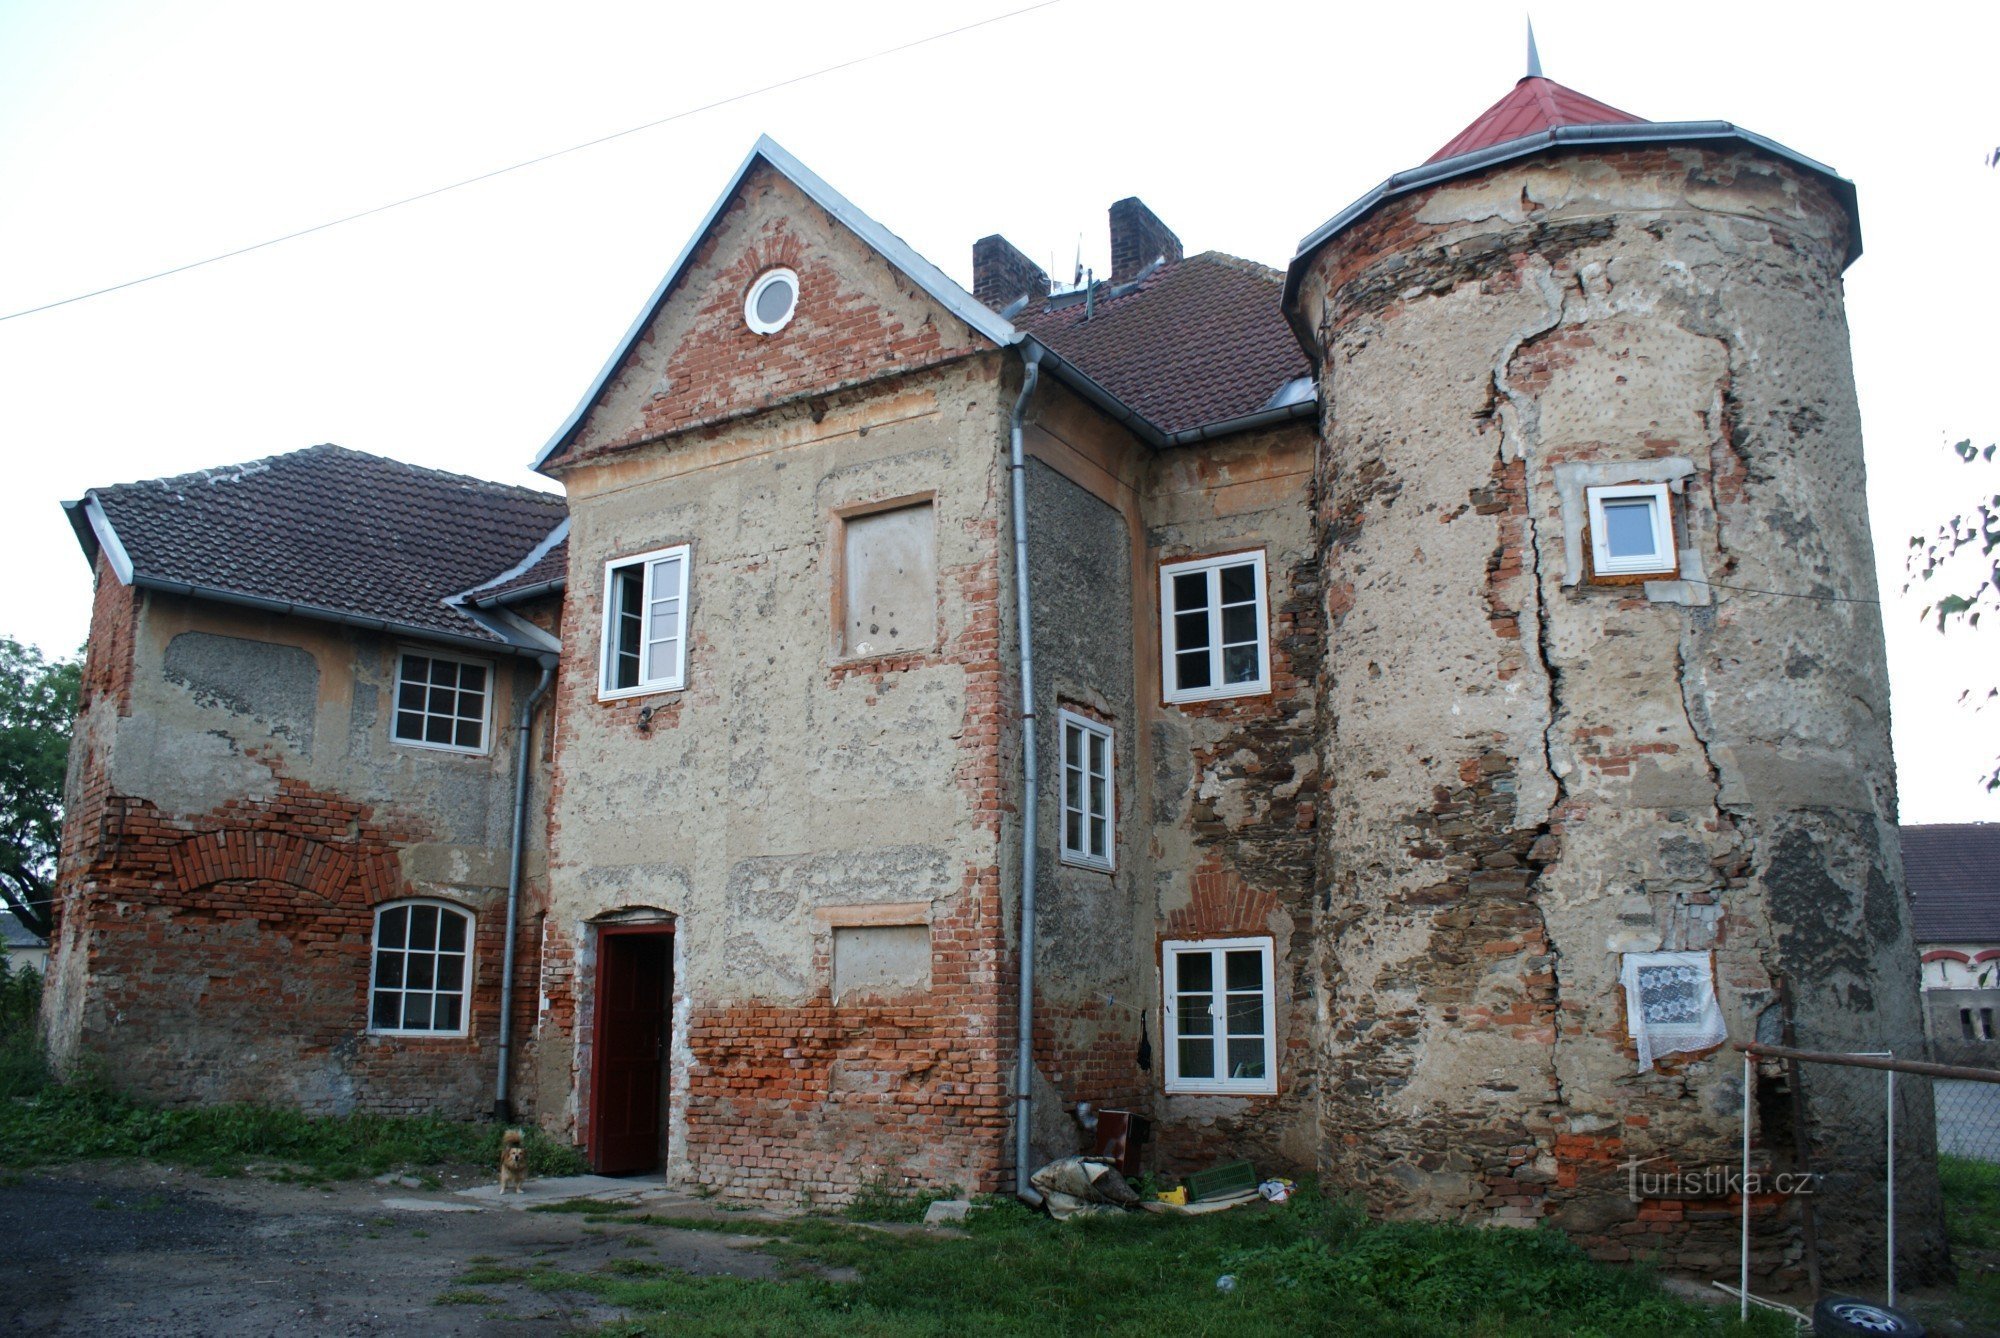 Pupils at Čáslav - fortress